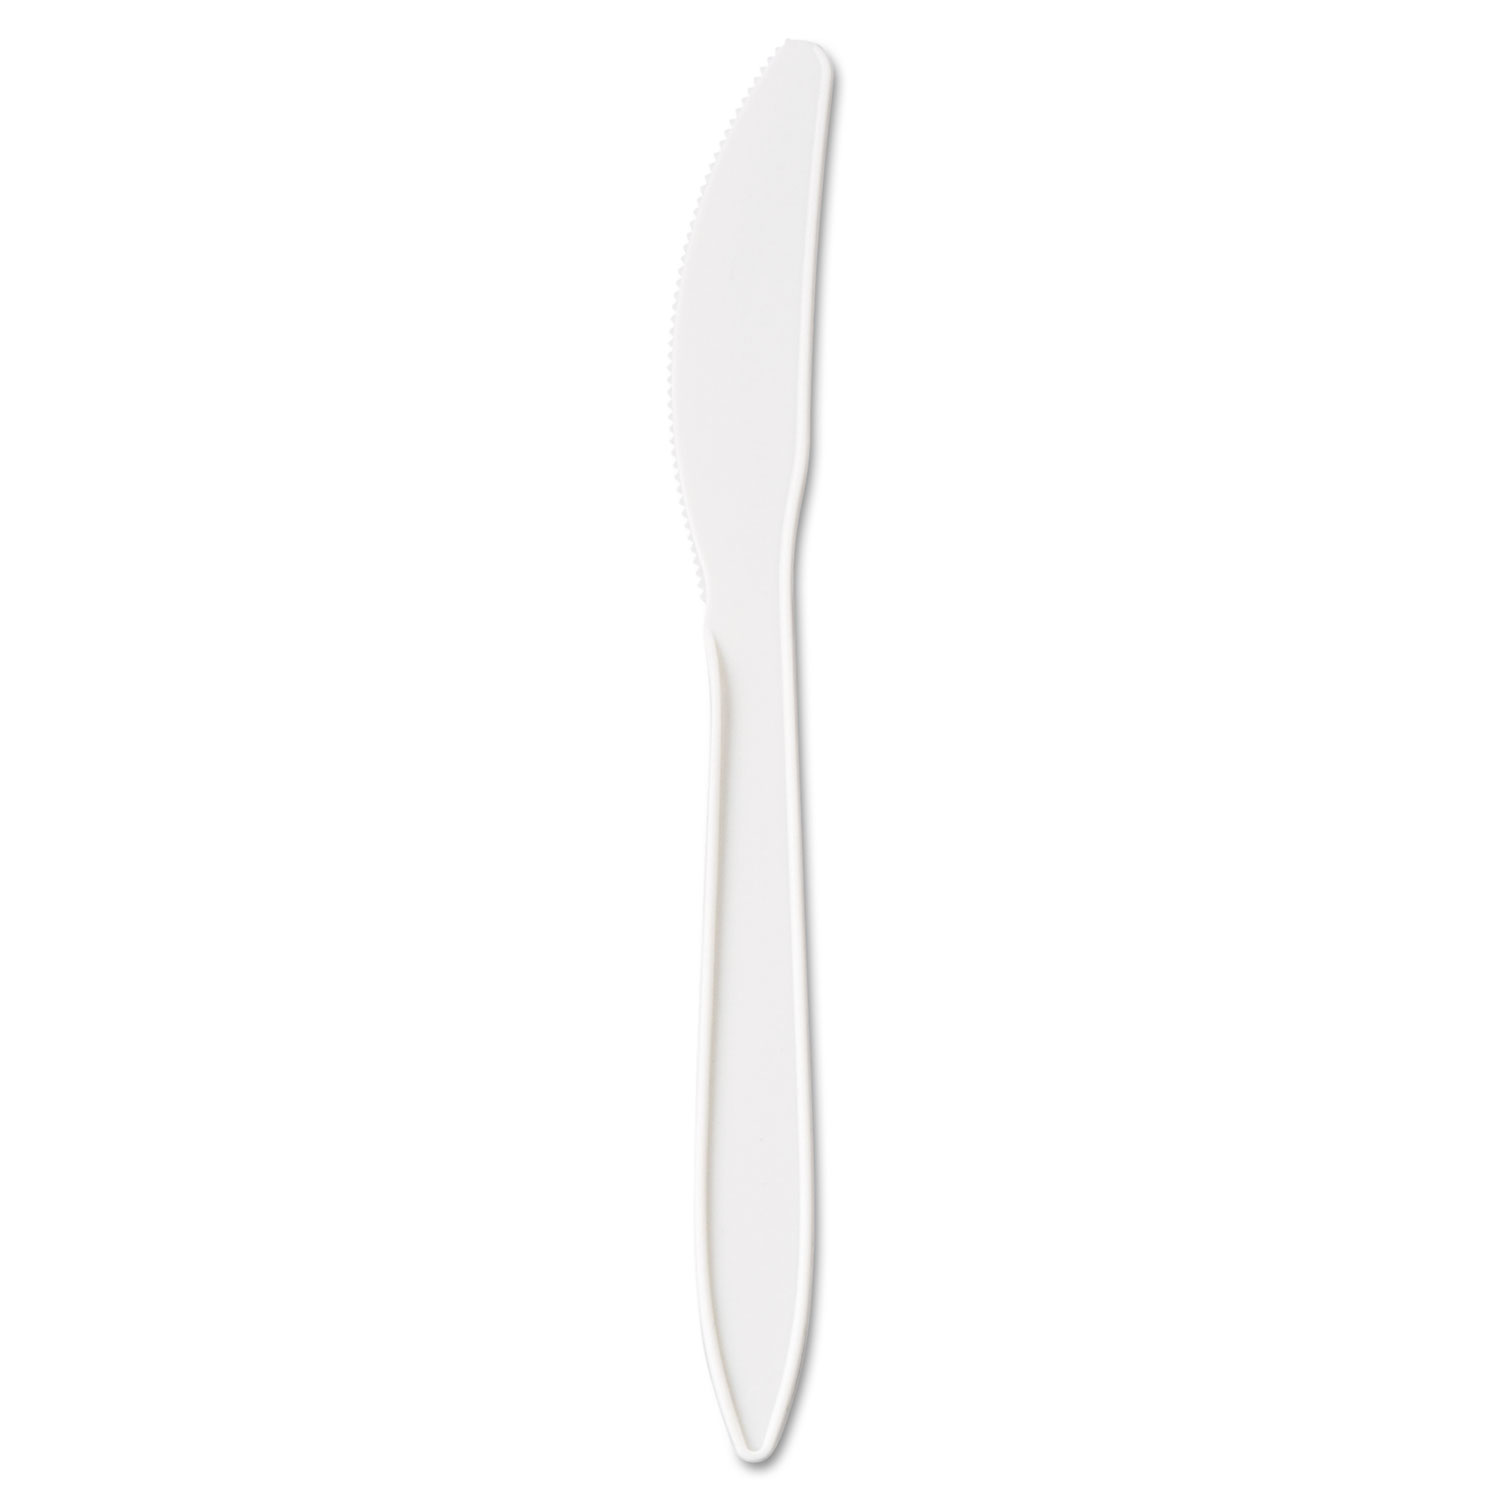  GEN GENPPKN Medium-Weight Cutlery, Knife, White, 1000/Carton (GENPPKN) 